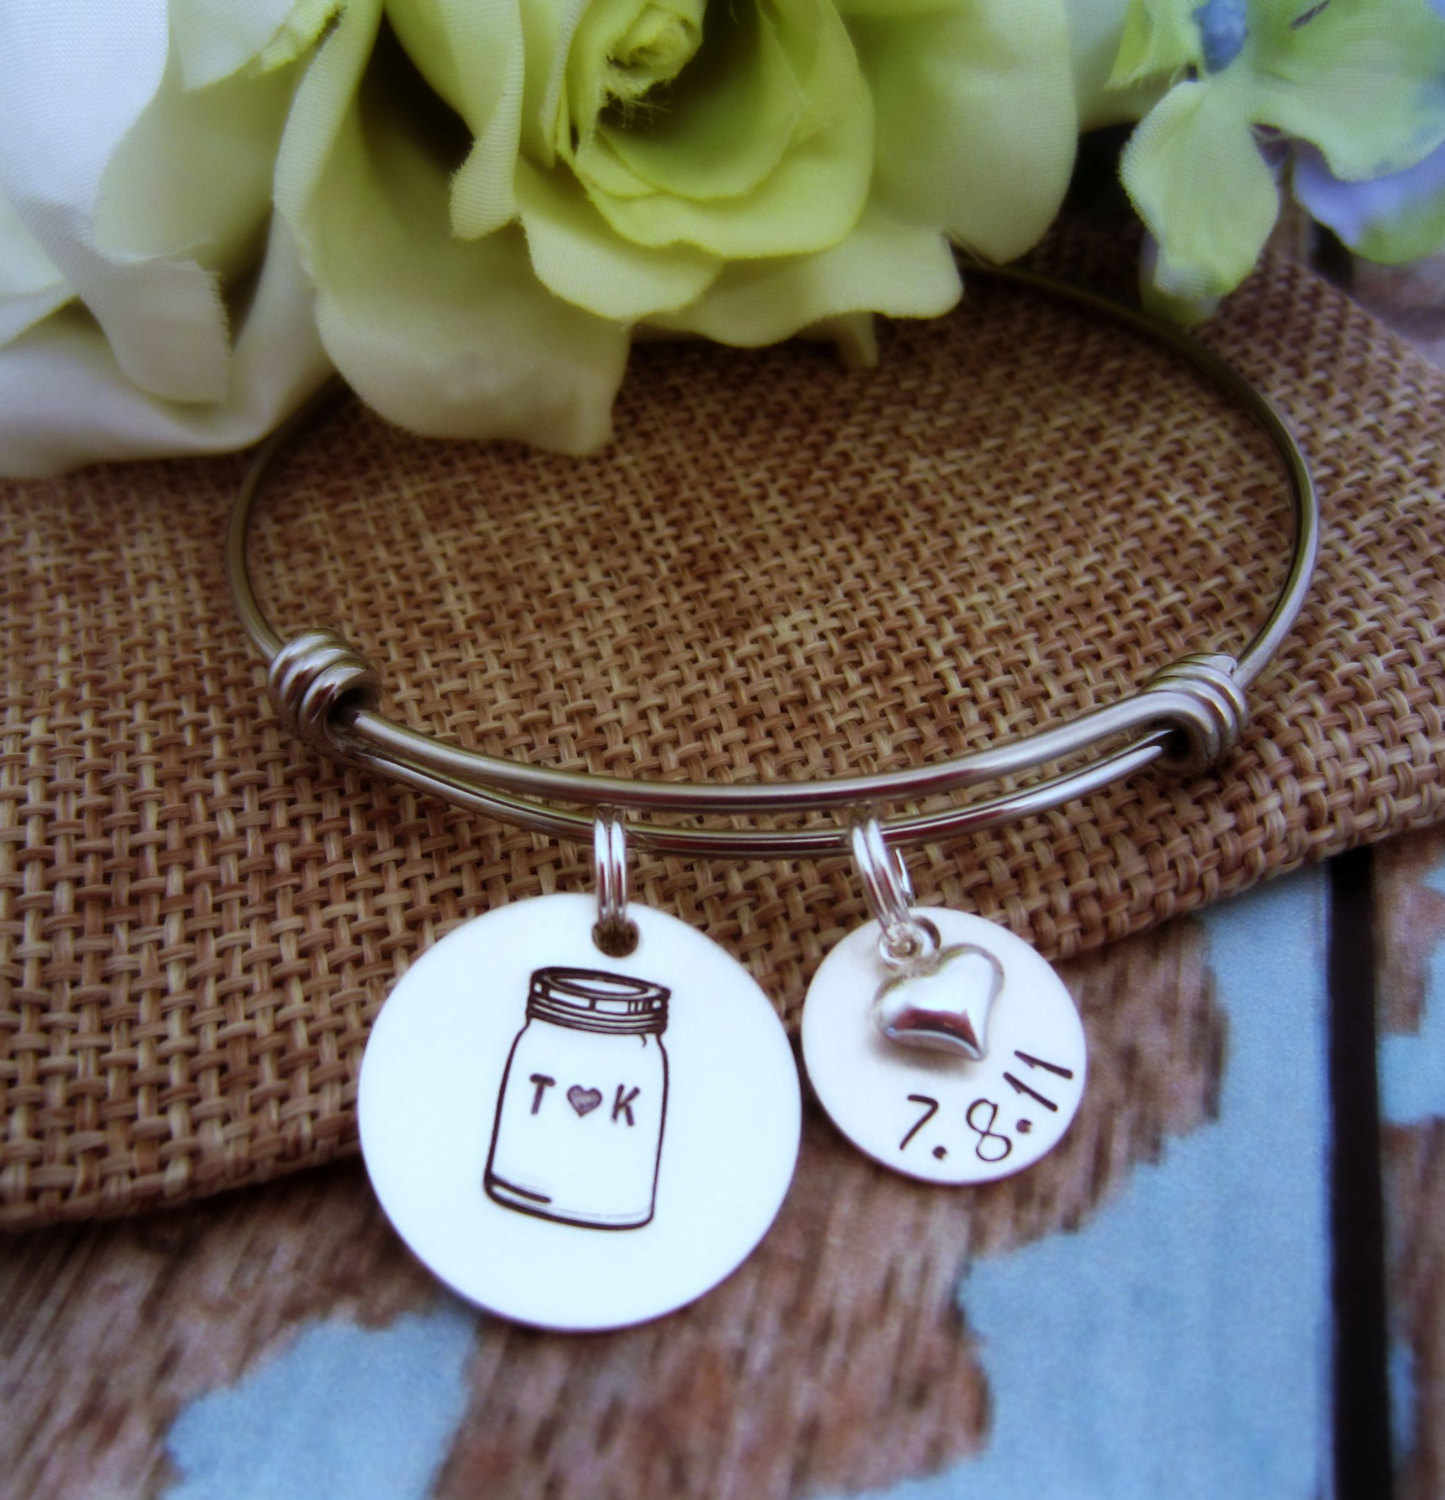 mason jar jewelry: bracelet with wedding date